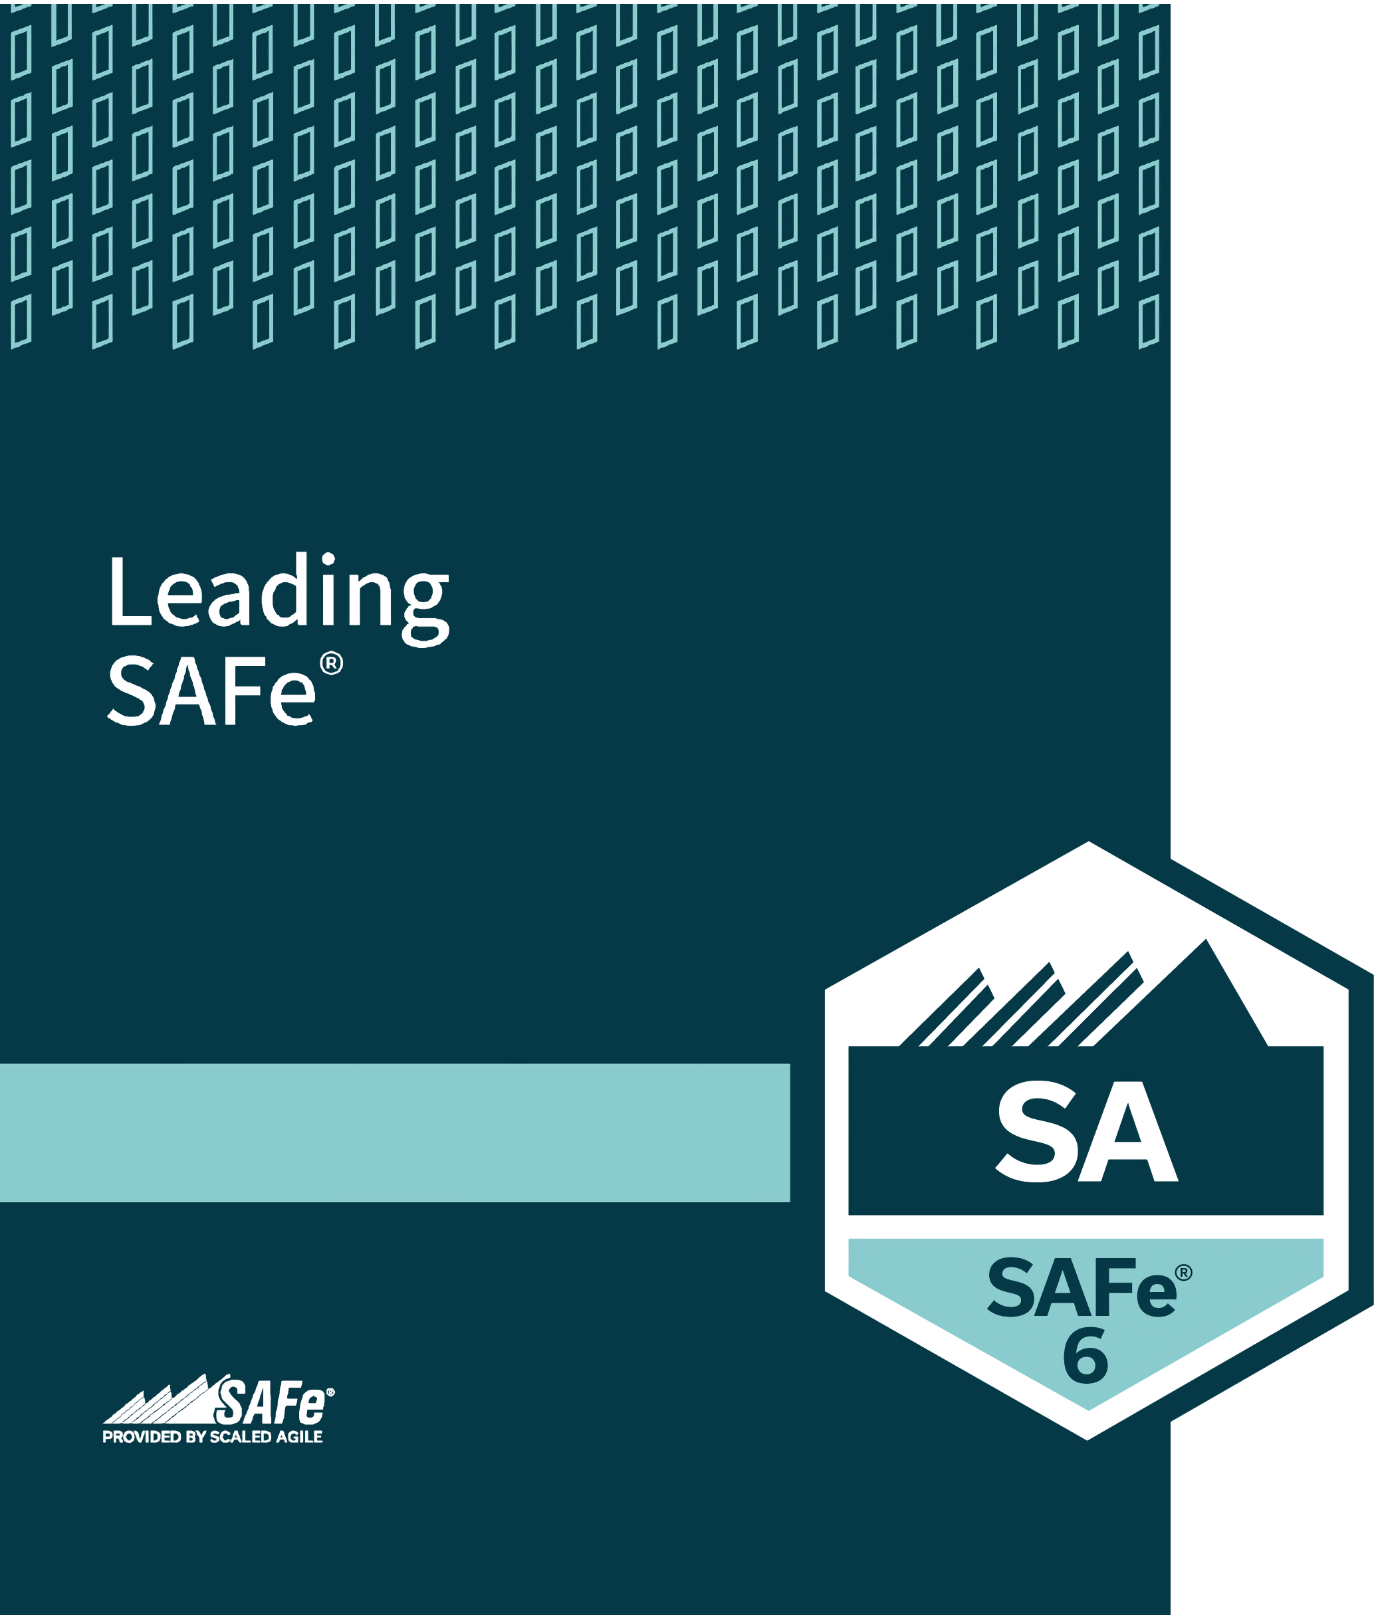 Leading SAFe®
